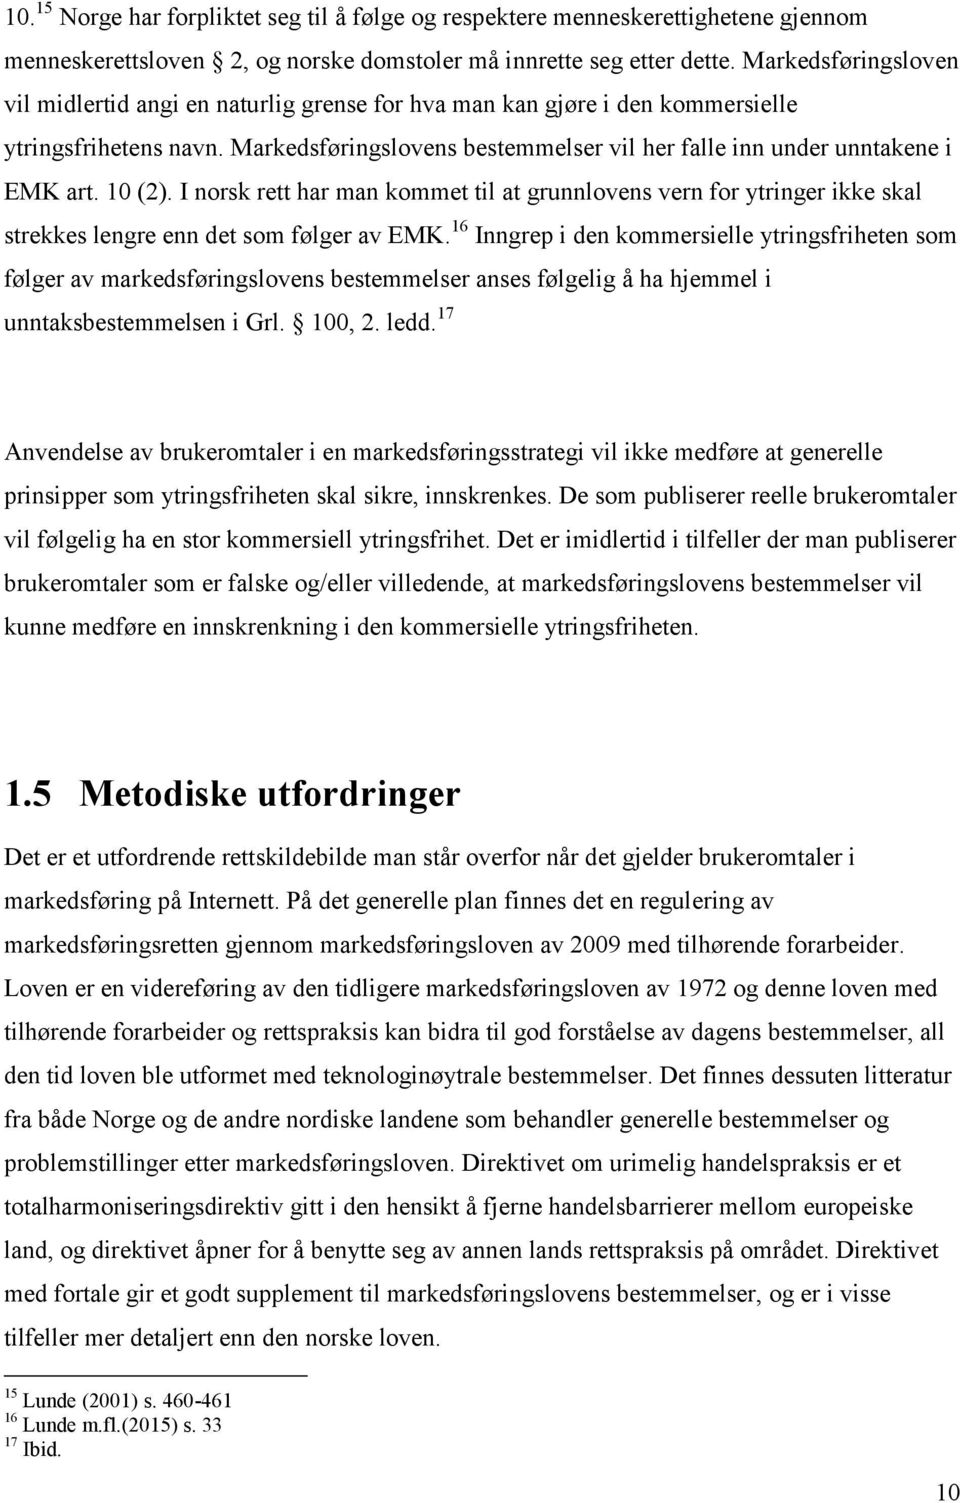 10 (2). I norsk rett har man kommet til at grunnlovens vern for ytringer ikke skal strekkes lengre enn det som følger av EMK.